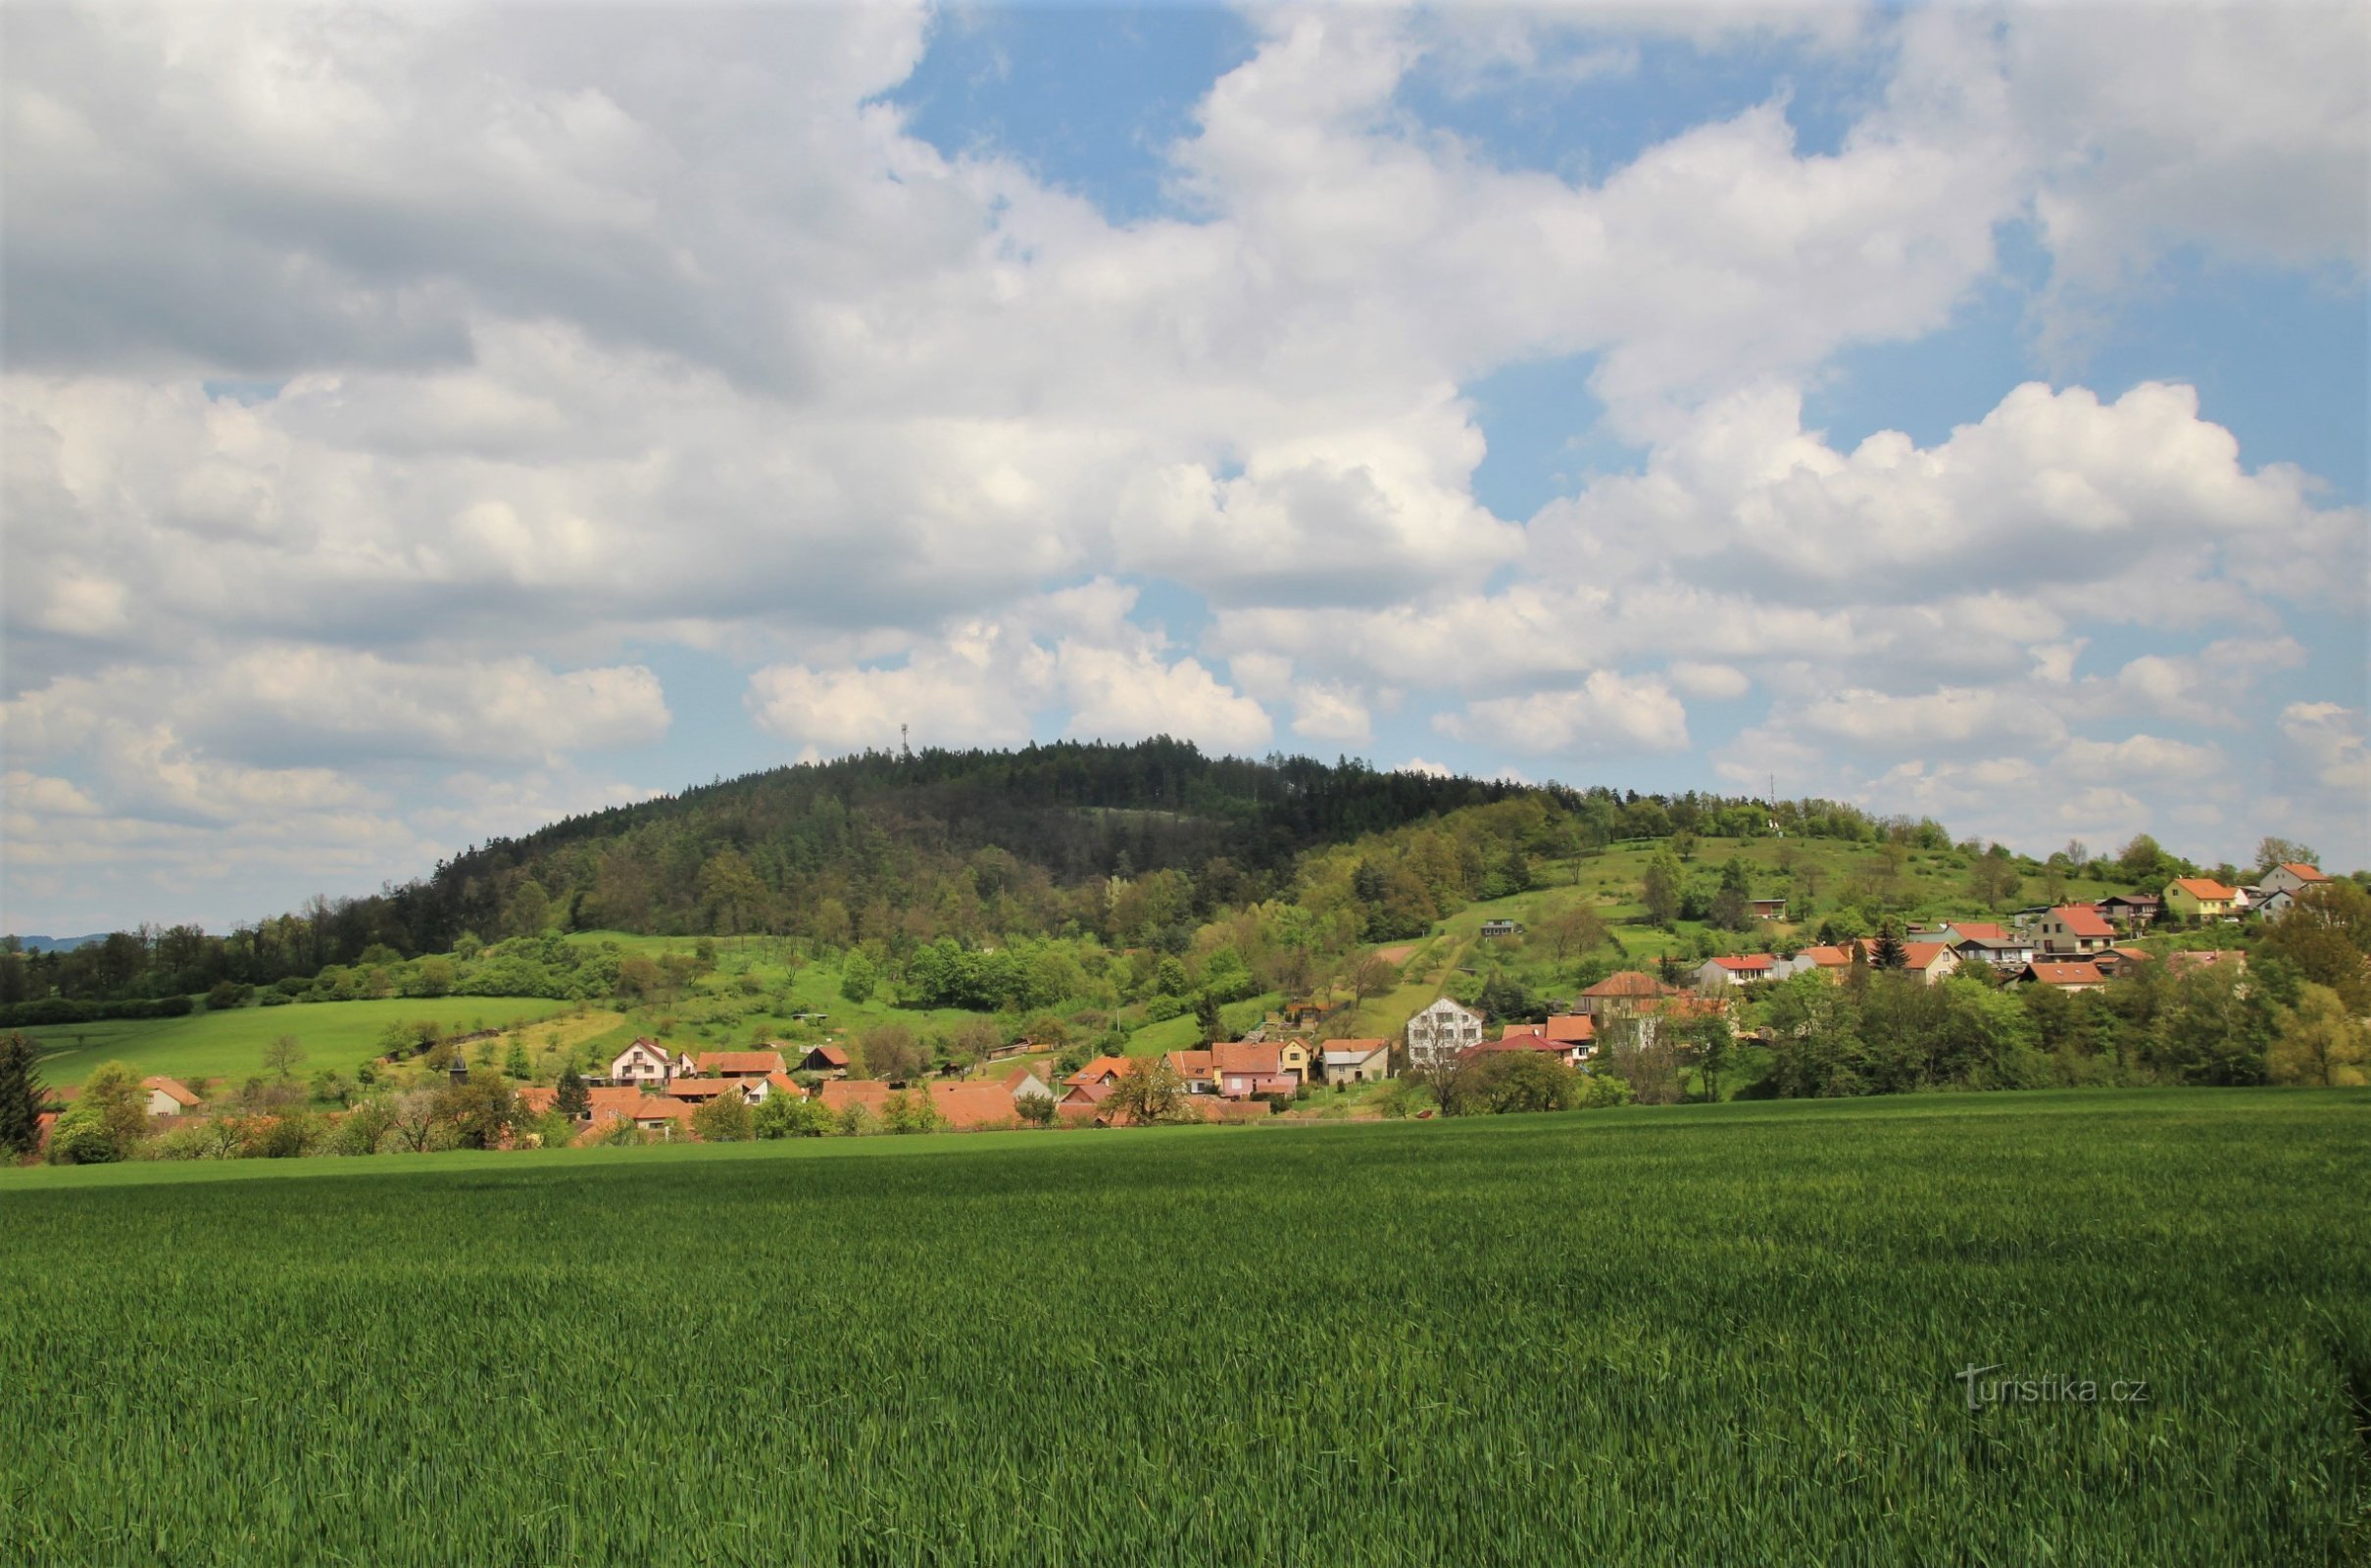 Vista da serra de Fáberka, em primeiro plano está a aldeia de Jabloňany, à direita existe um miradouro sobre a serra